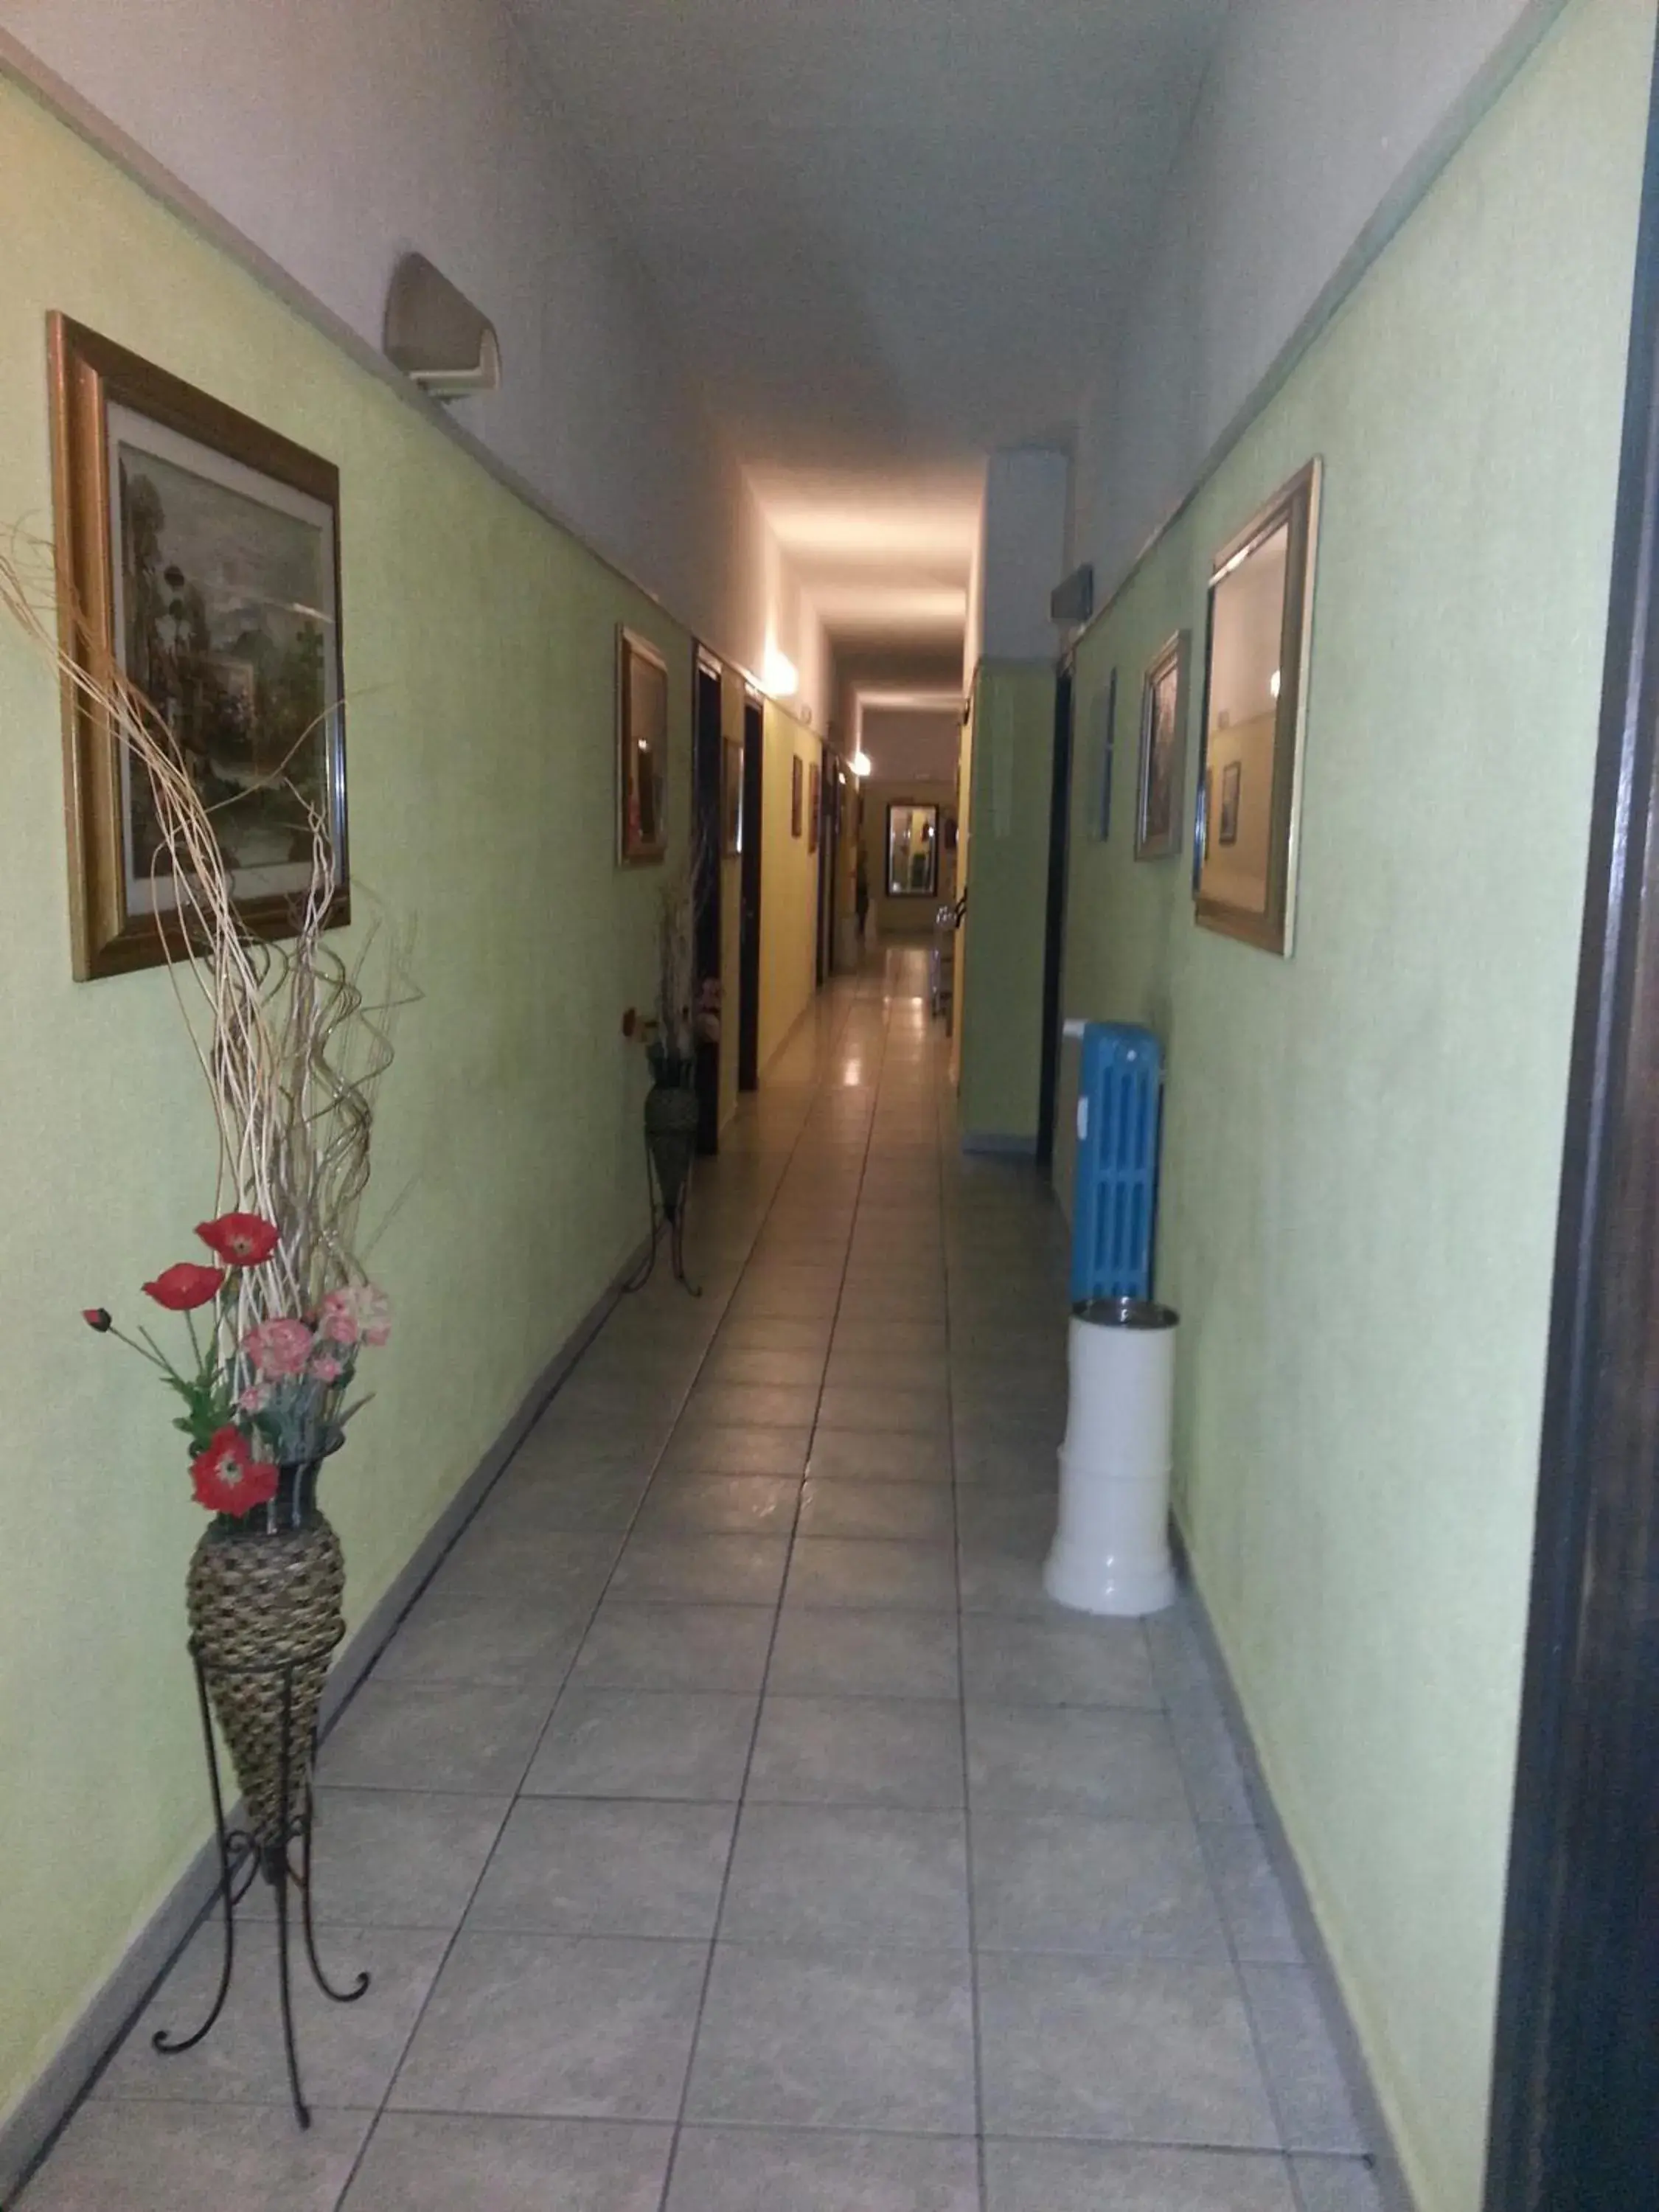 Area and facilities, Lobby/Reception in Hotel Stazione